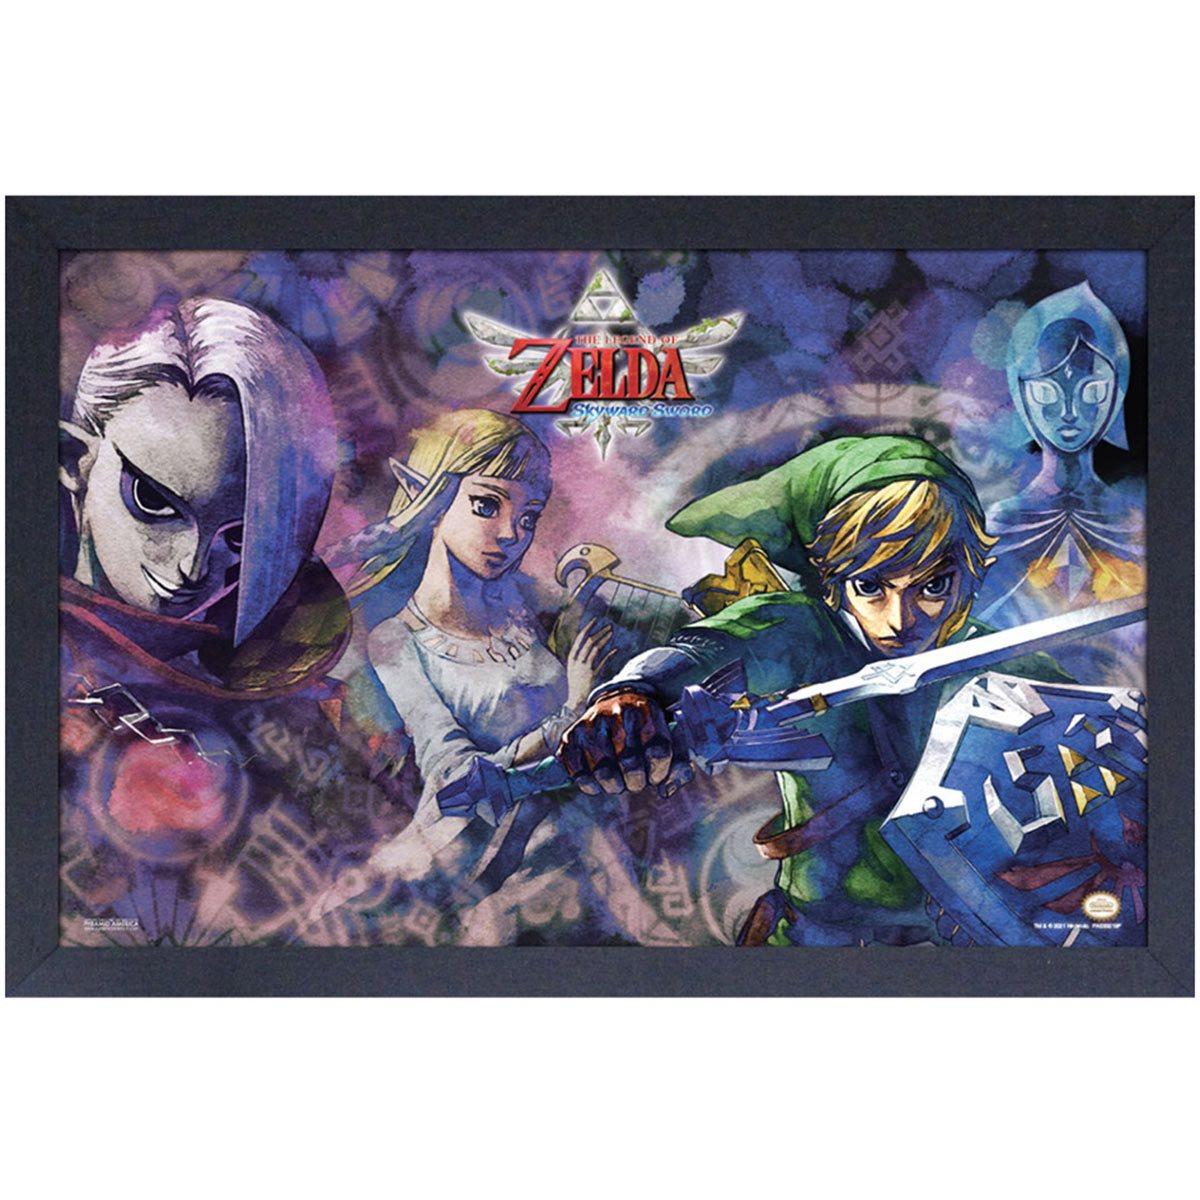 Loz Botw Totk Link Zelda Poster Art Print 11 X 17 